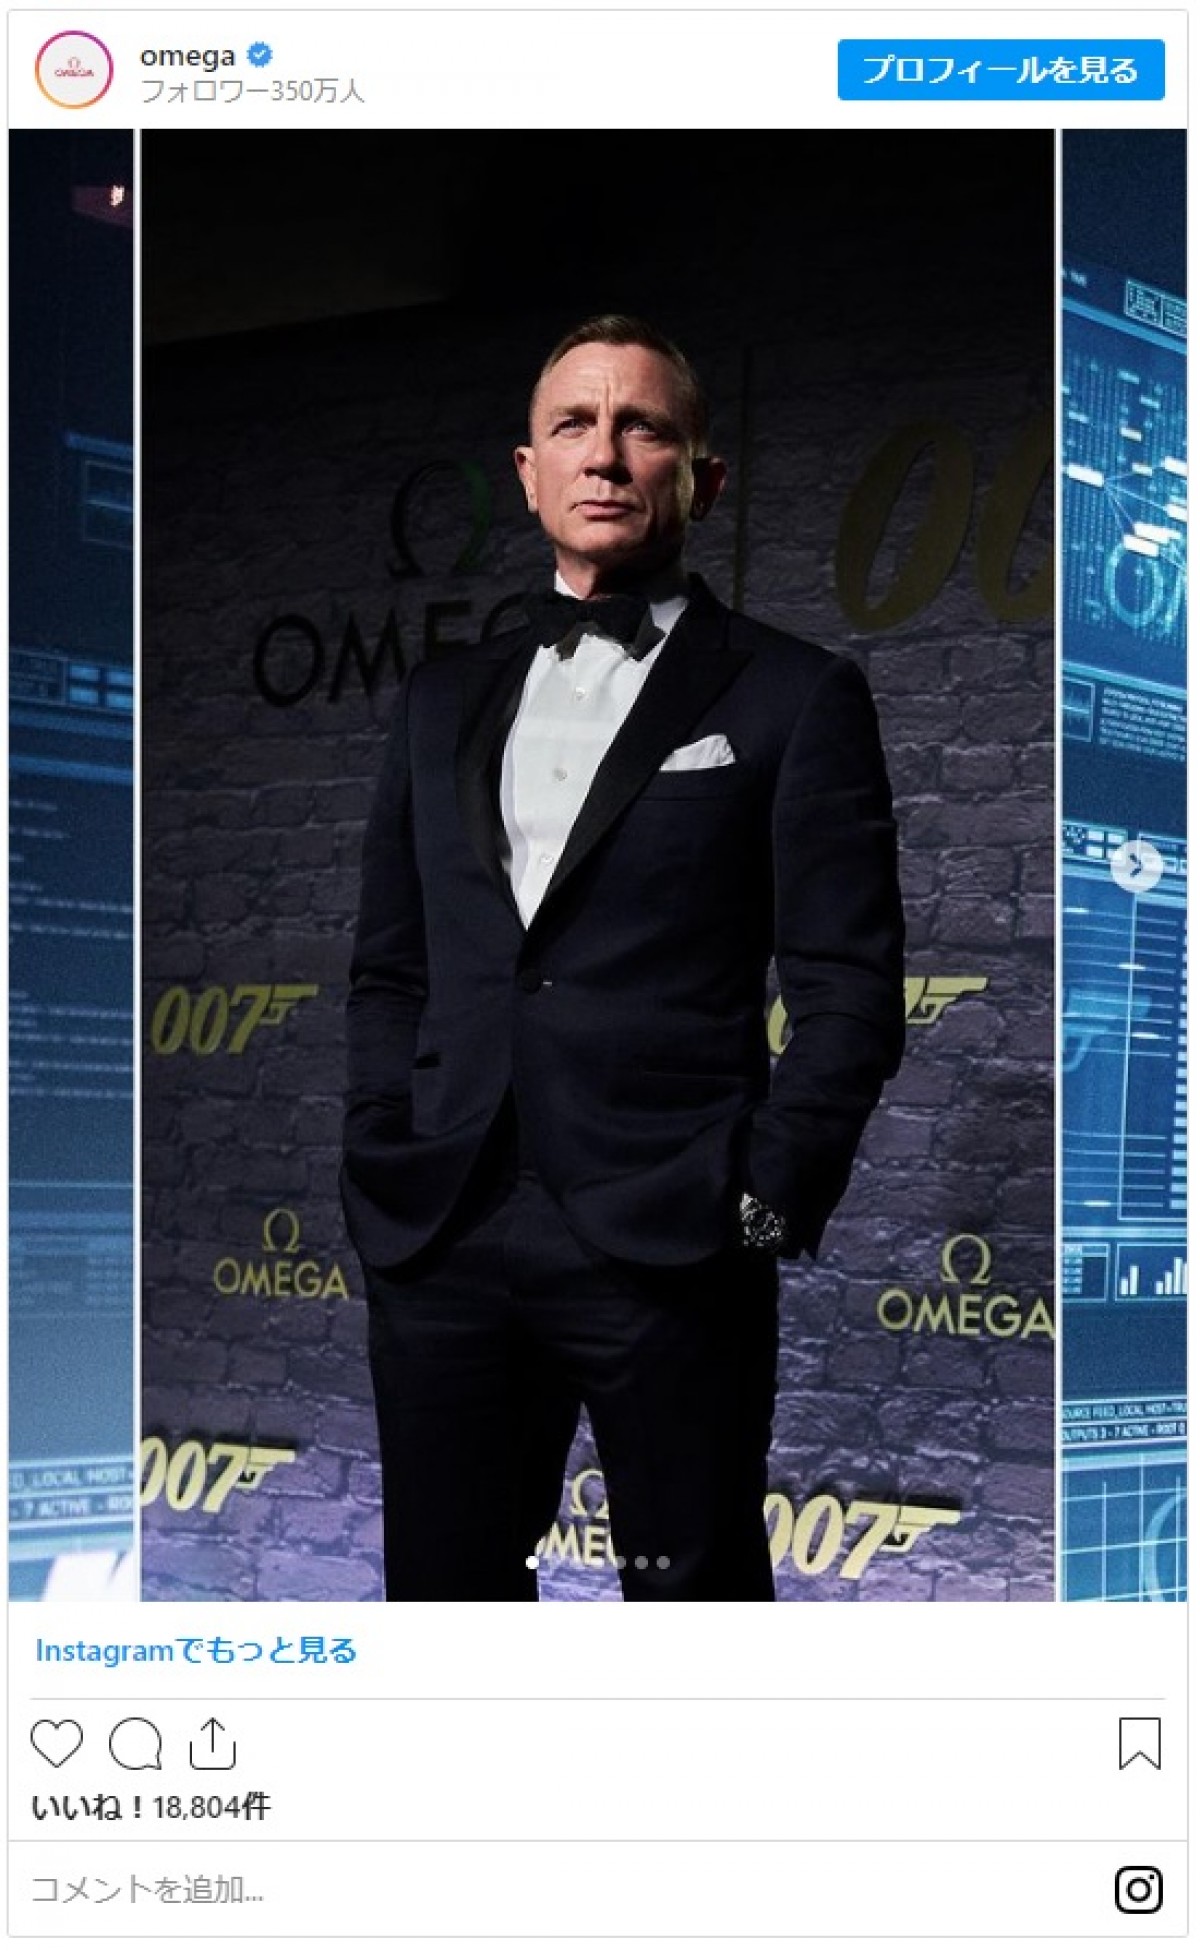 「007」60周年記念パーティー開催　ダニエル・クレイグがタキシードで登場